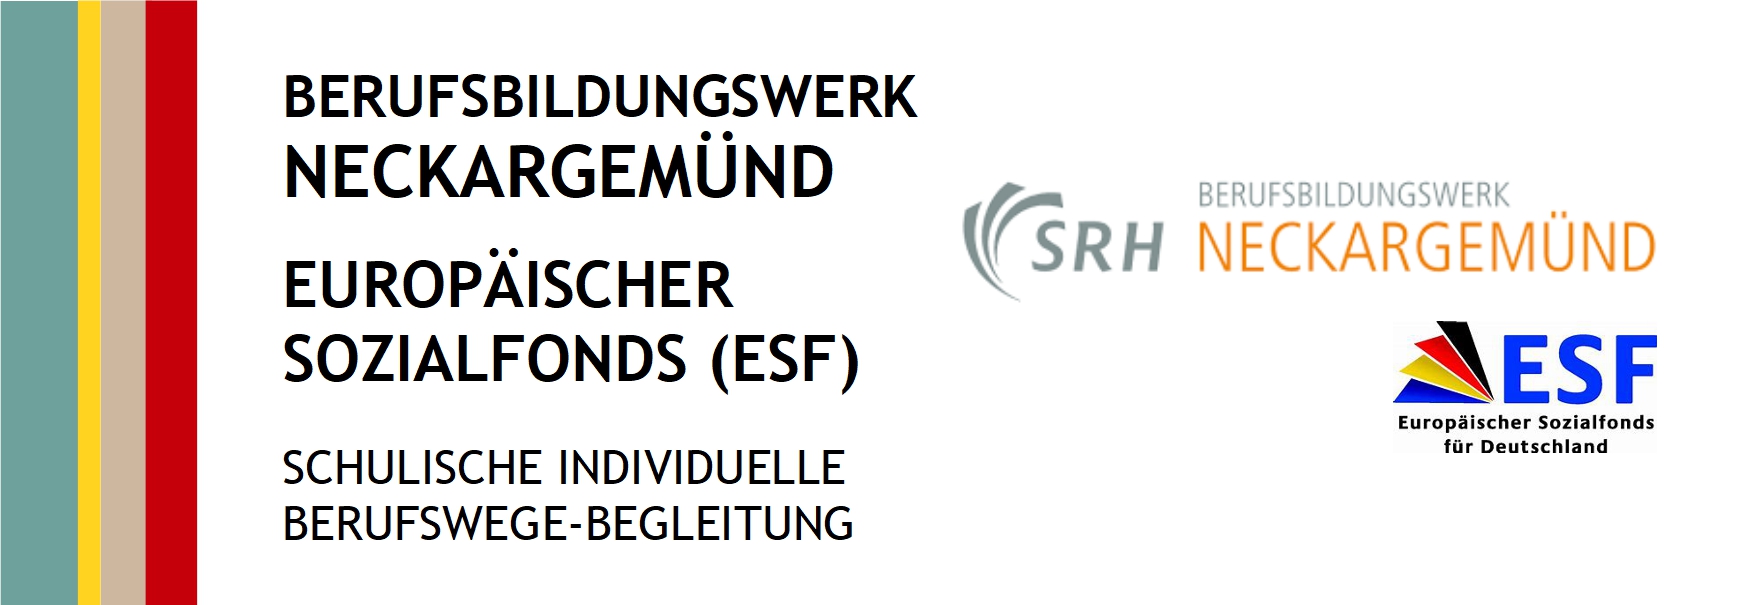 Logos der SRH Neckargemünd und des Europäischen Sozialfonds für Deutschland